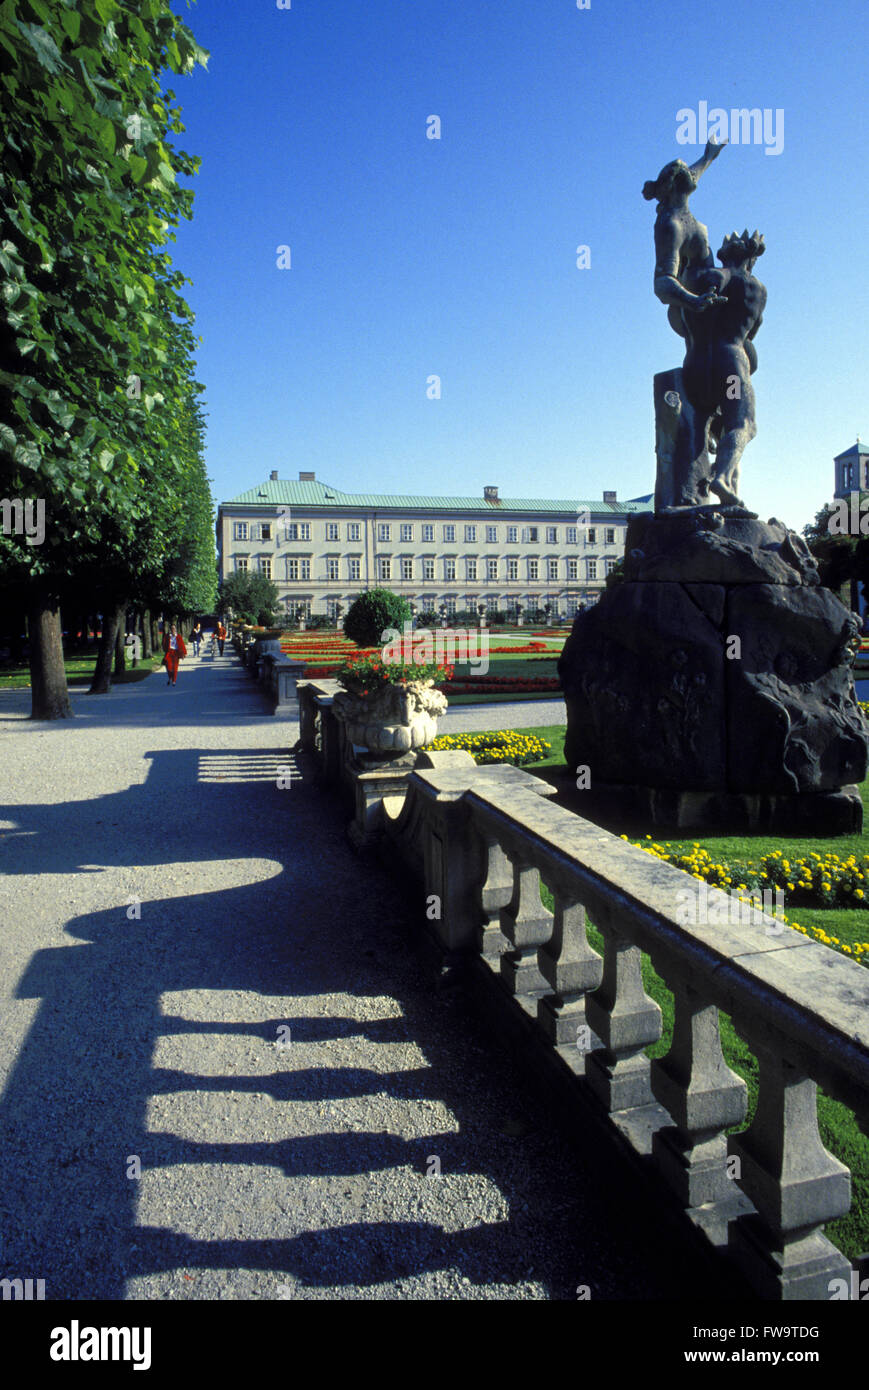 AUT, Austria, Salzburg, park and castle Mirabell.  AUT, Oesterreich, Salzburg, Schloss und Park Mirabell. Stock Photo